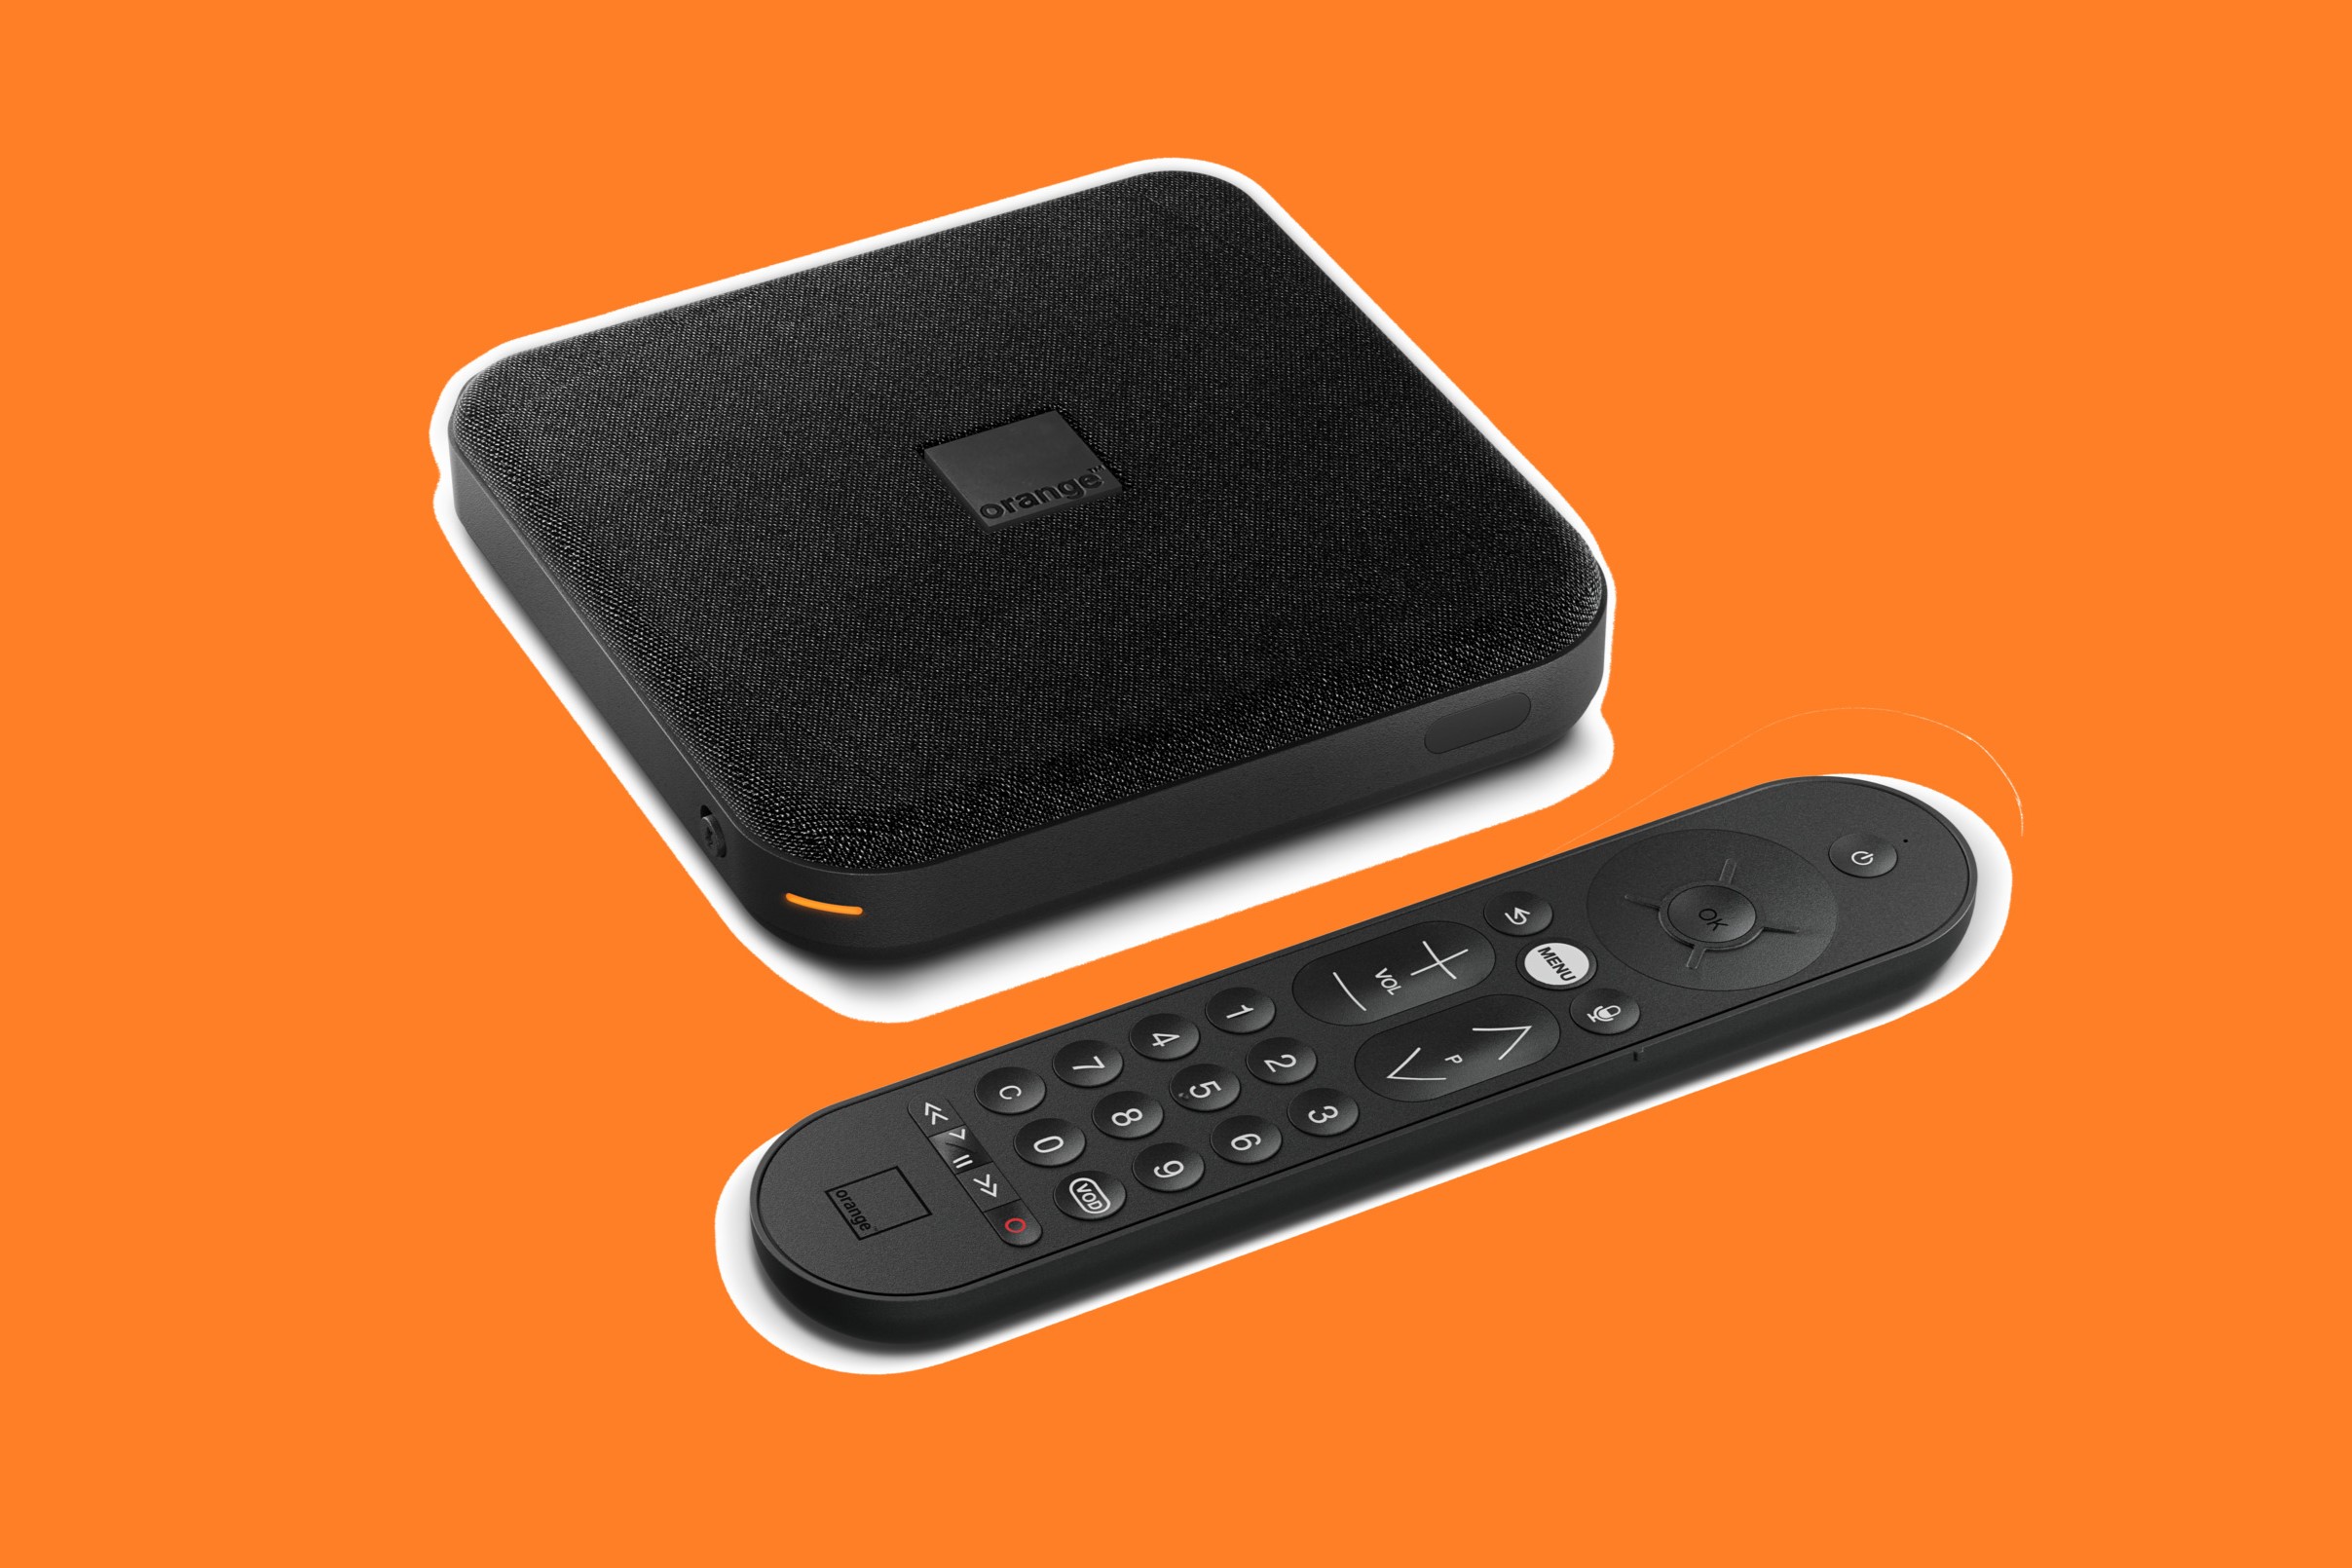 Orange, 5 ans après, commercialise un nouveau décodeur TV, plus puissant et moderne